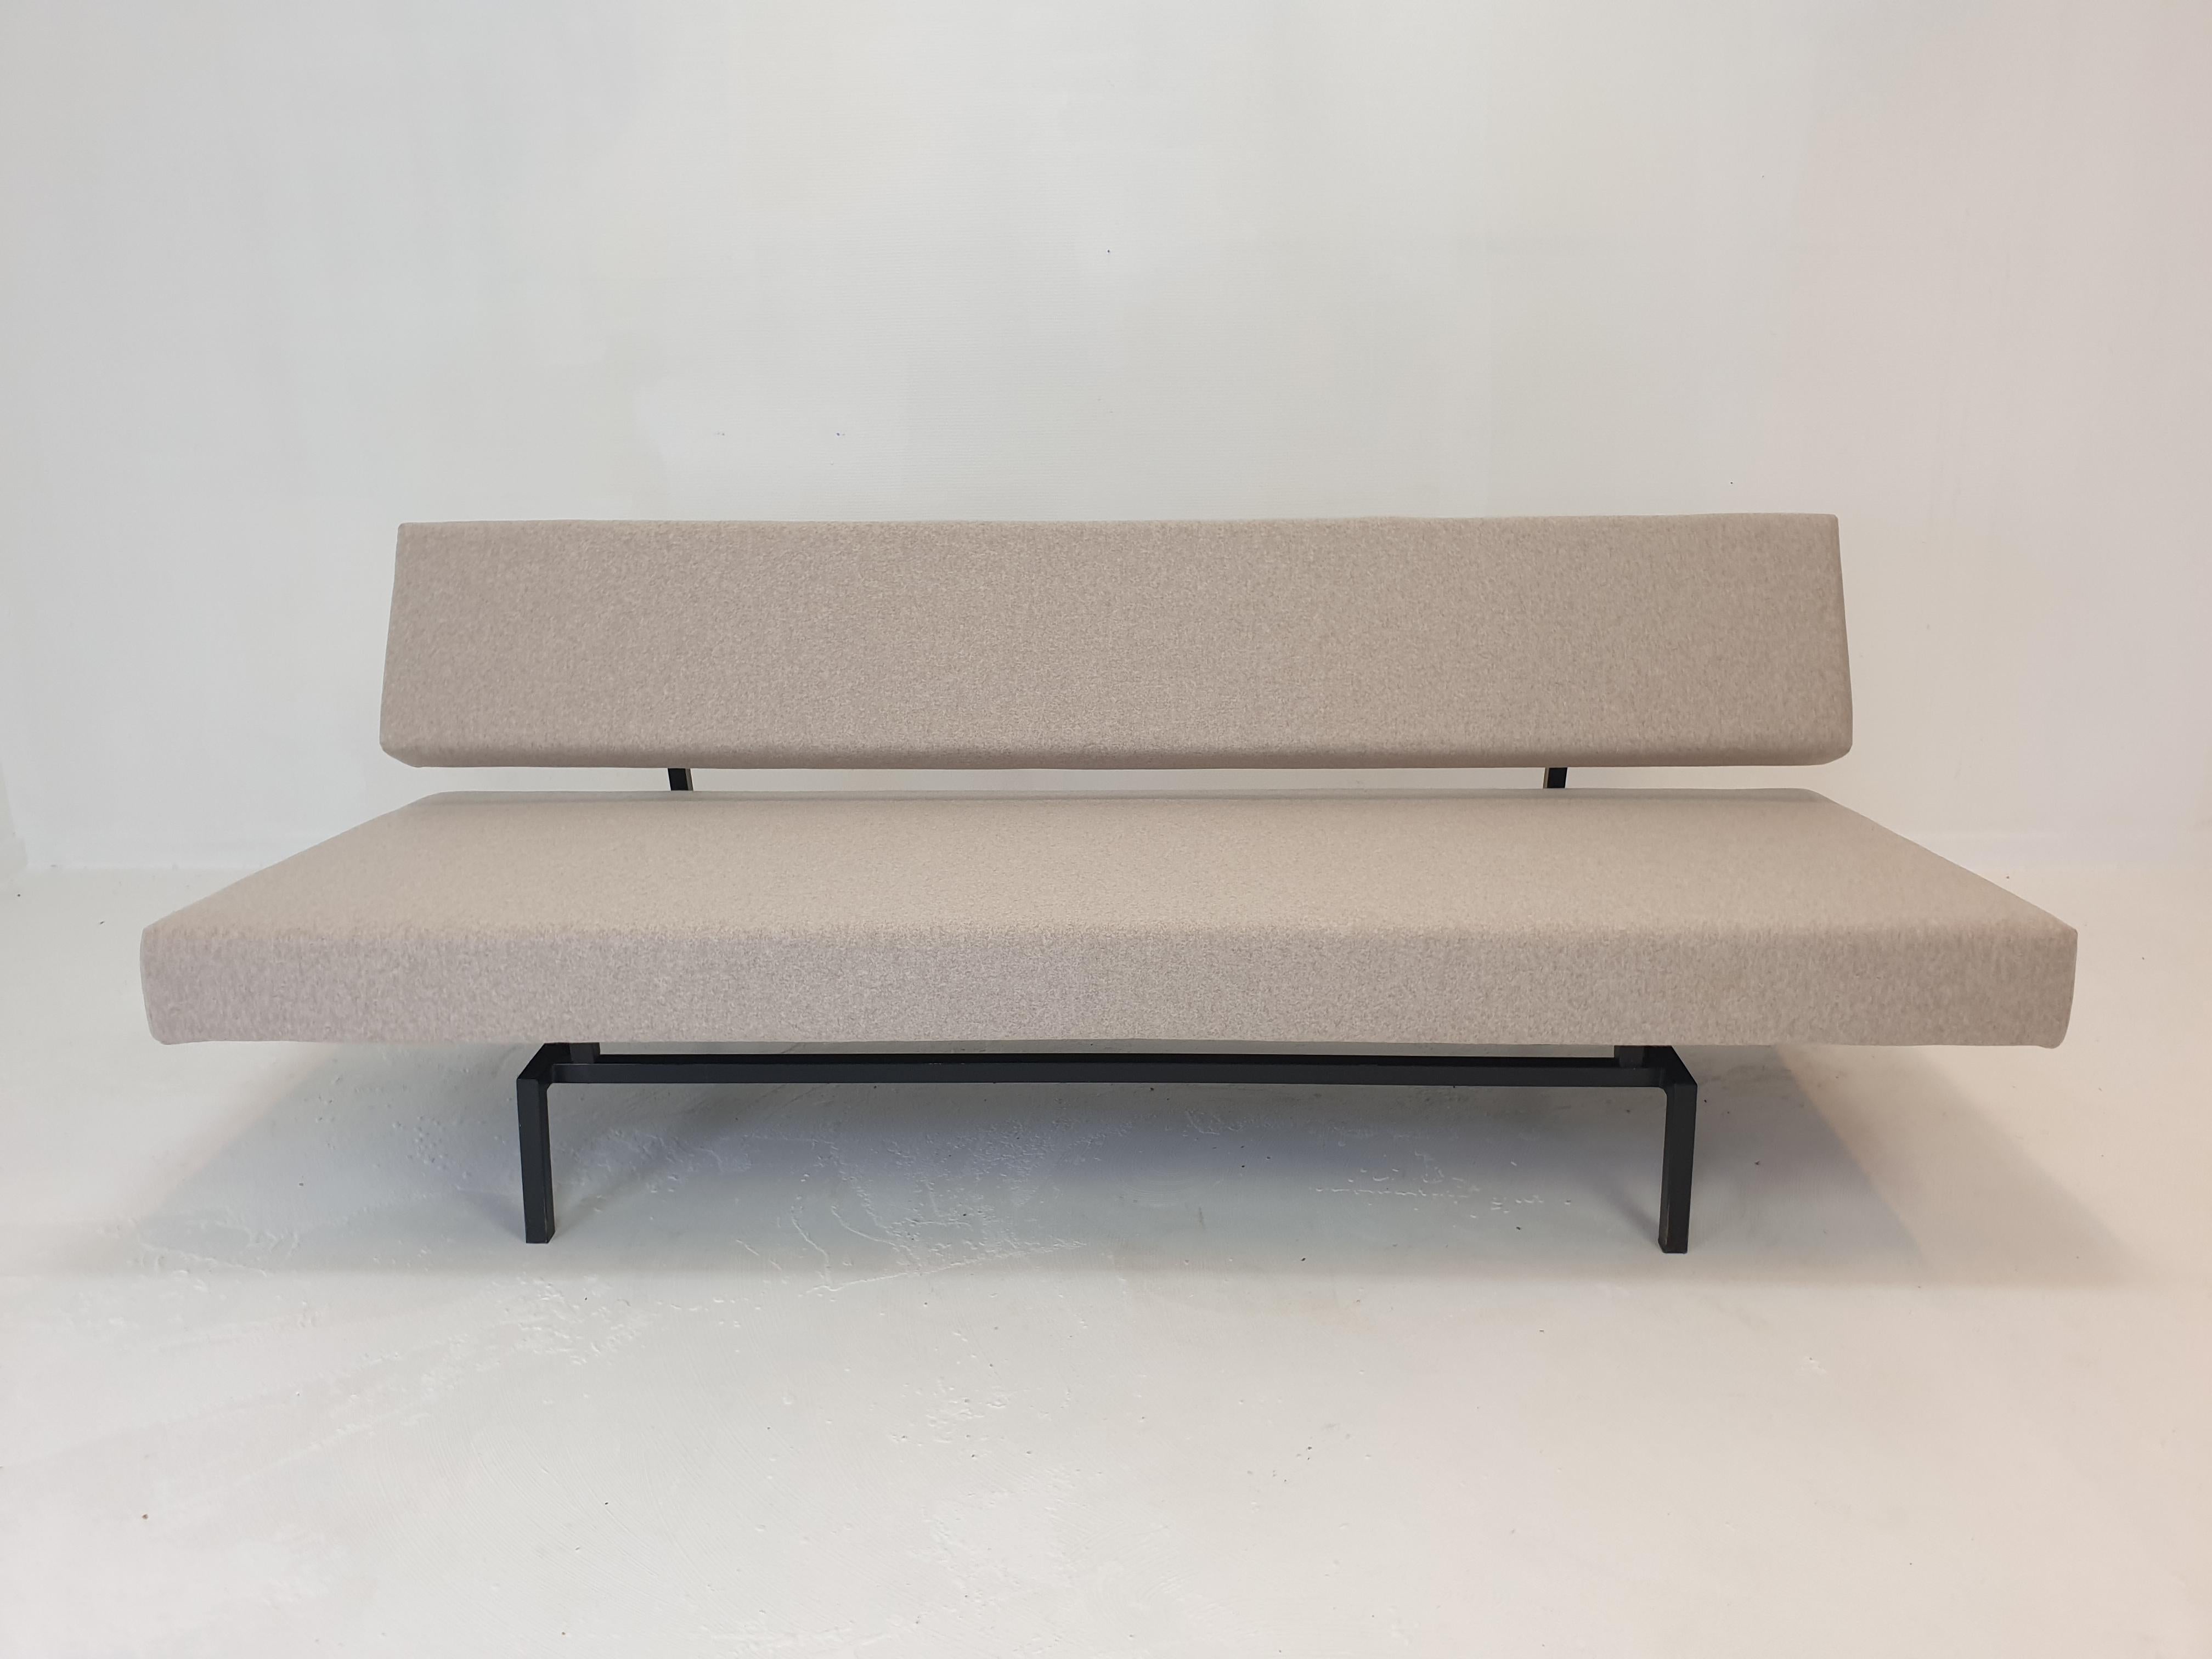 Canapé-lit, conçu par le célèbre Martin Visser dans les années 60. 
Fabriqué par 't Spectrum, Pays-Bas. 

Structure métallique simple de haute qualité offrant un confort maximum. 

Il vient d'être restauré avec une nouvelle mousse et un nouveau